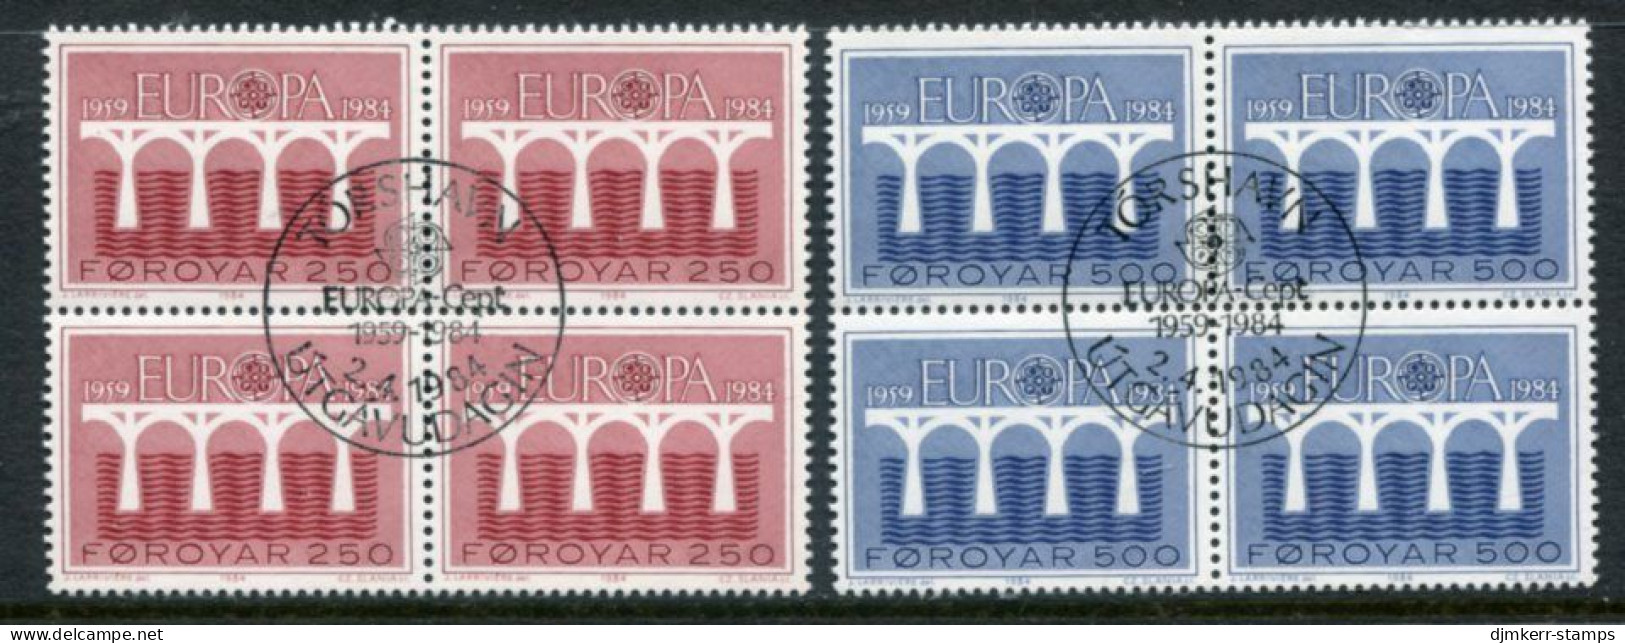 FAROE IS. 1984 Europa Blocks Of 4 Used.  Michel 97-98 - Färöer Inseln